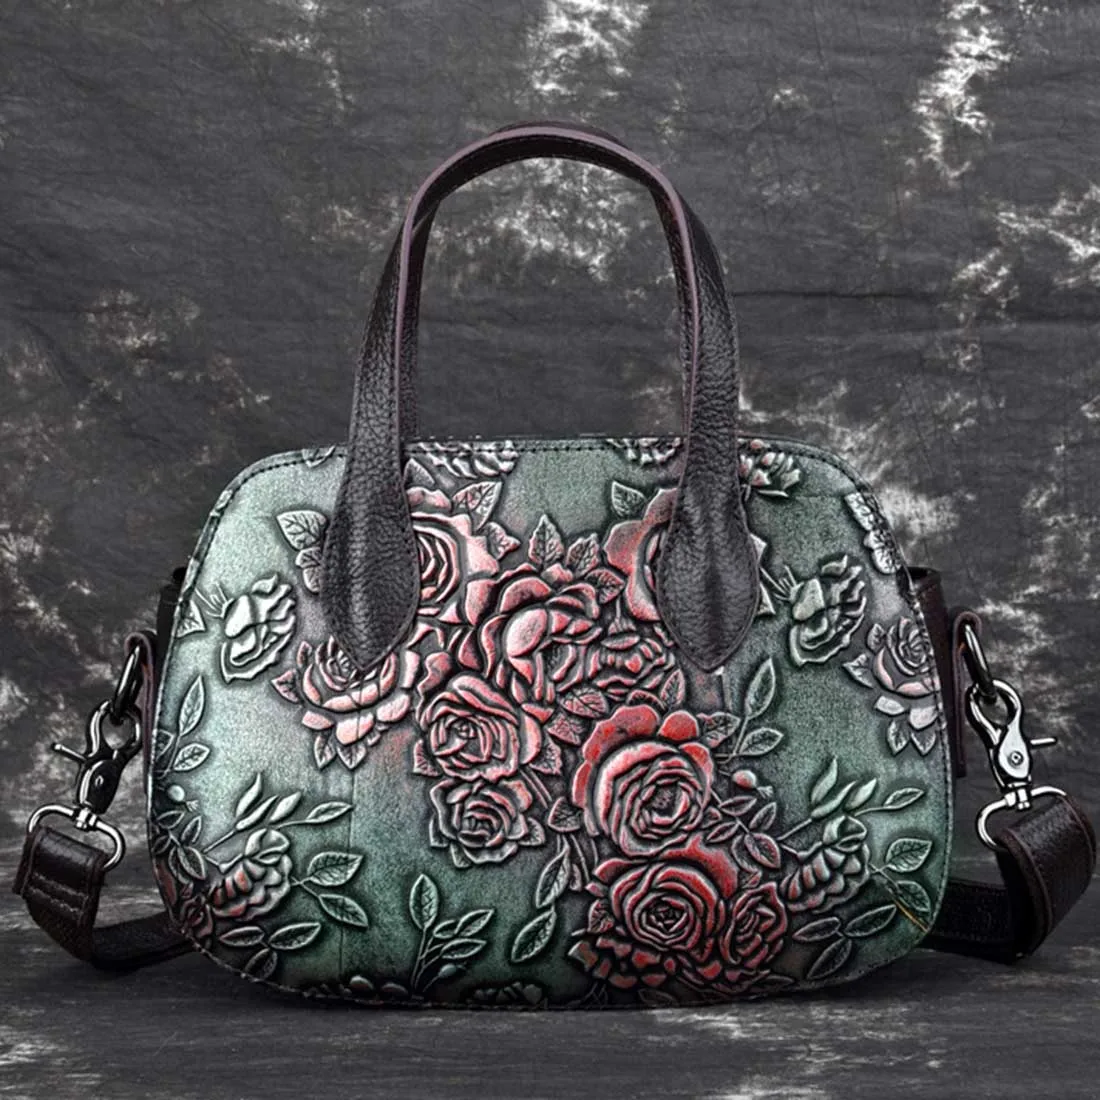 Горячая Распродажа, натуральная тисненая кожаная сумка-тоут, известный бренд, высокое качество, Ретро стиль, сумка через плечо, женская сумка - Цвет: Green